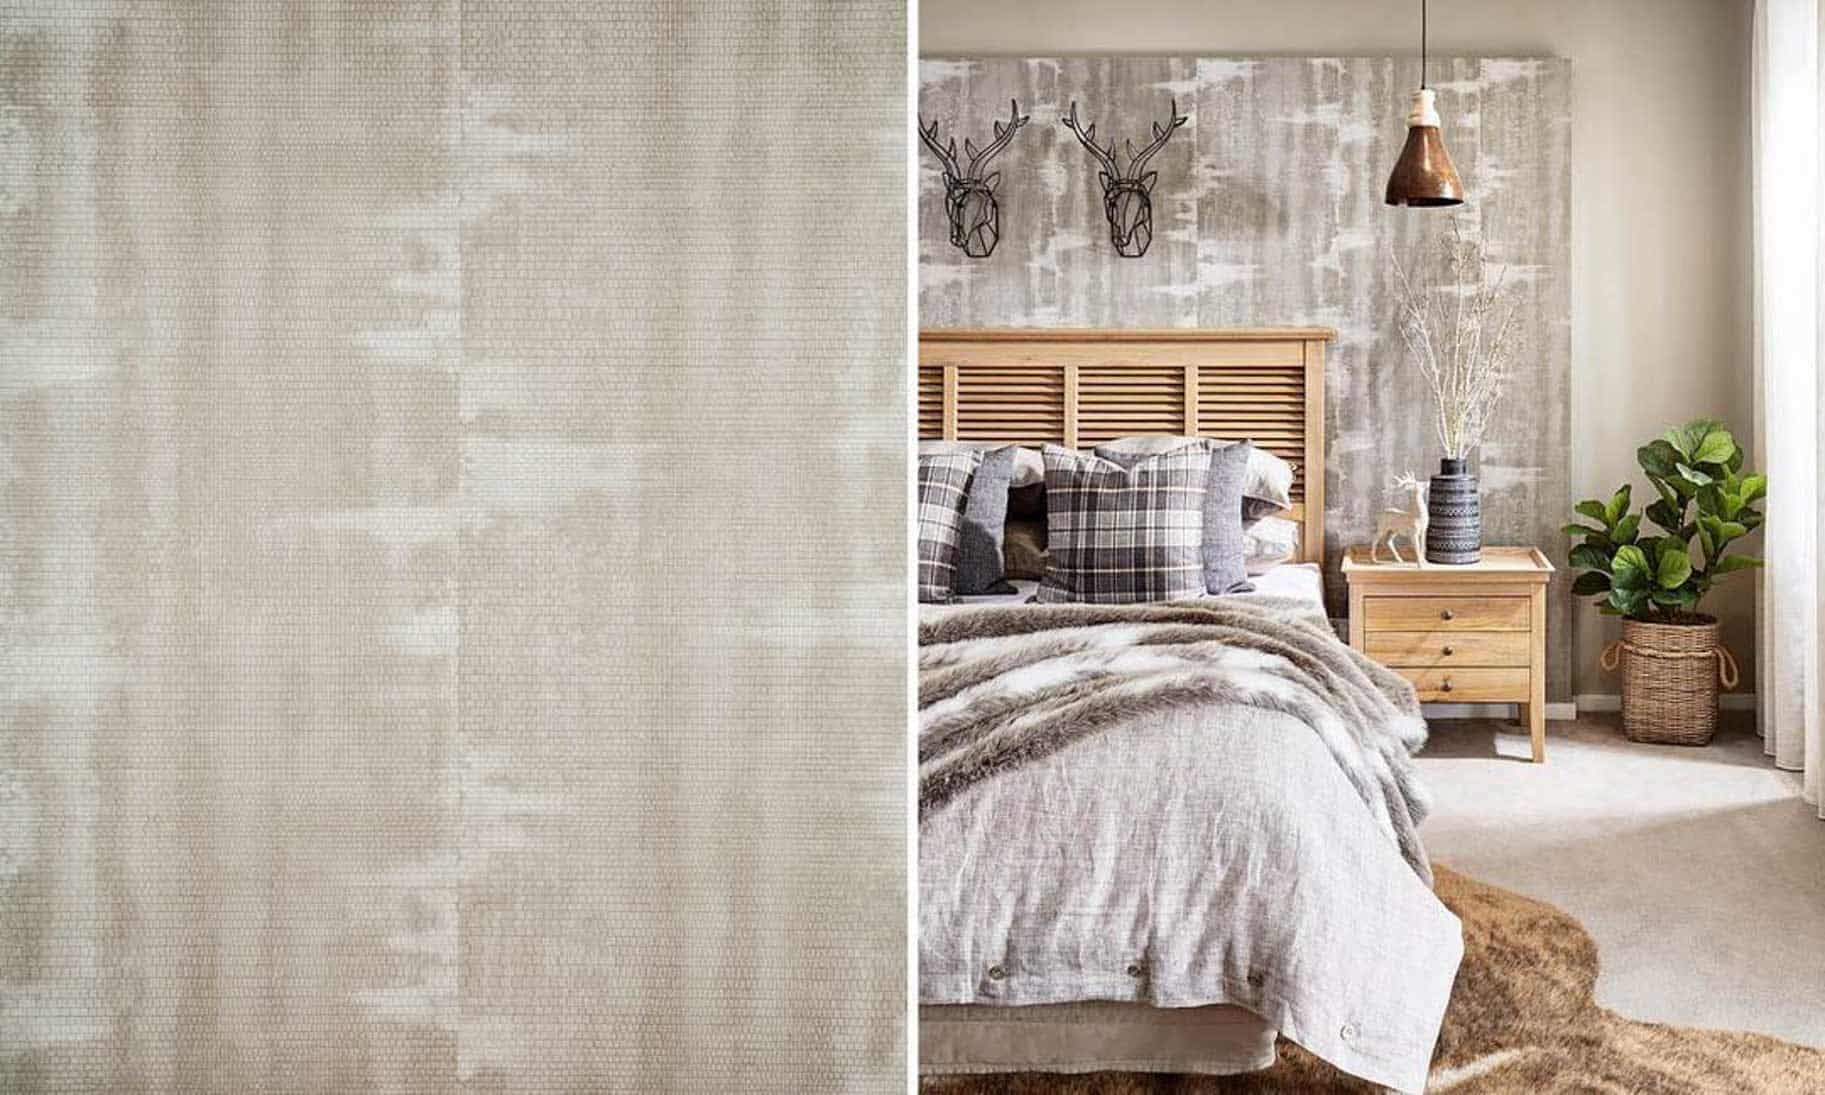  Desain  Kamar  Tidur  3x3 Dengan  Wallpaper  Thegorbalsla